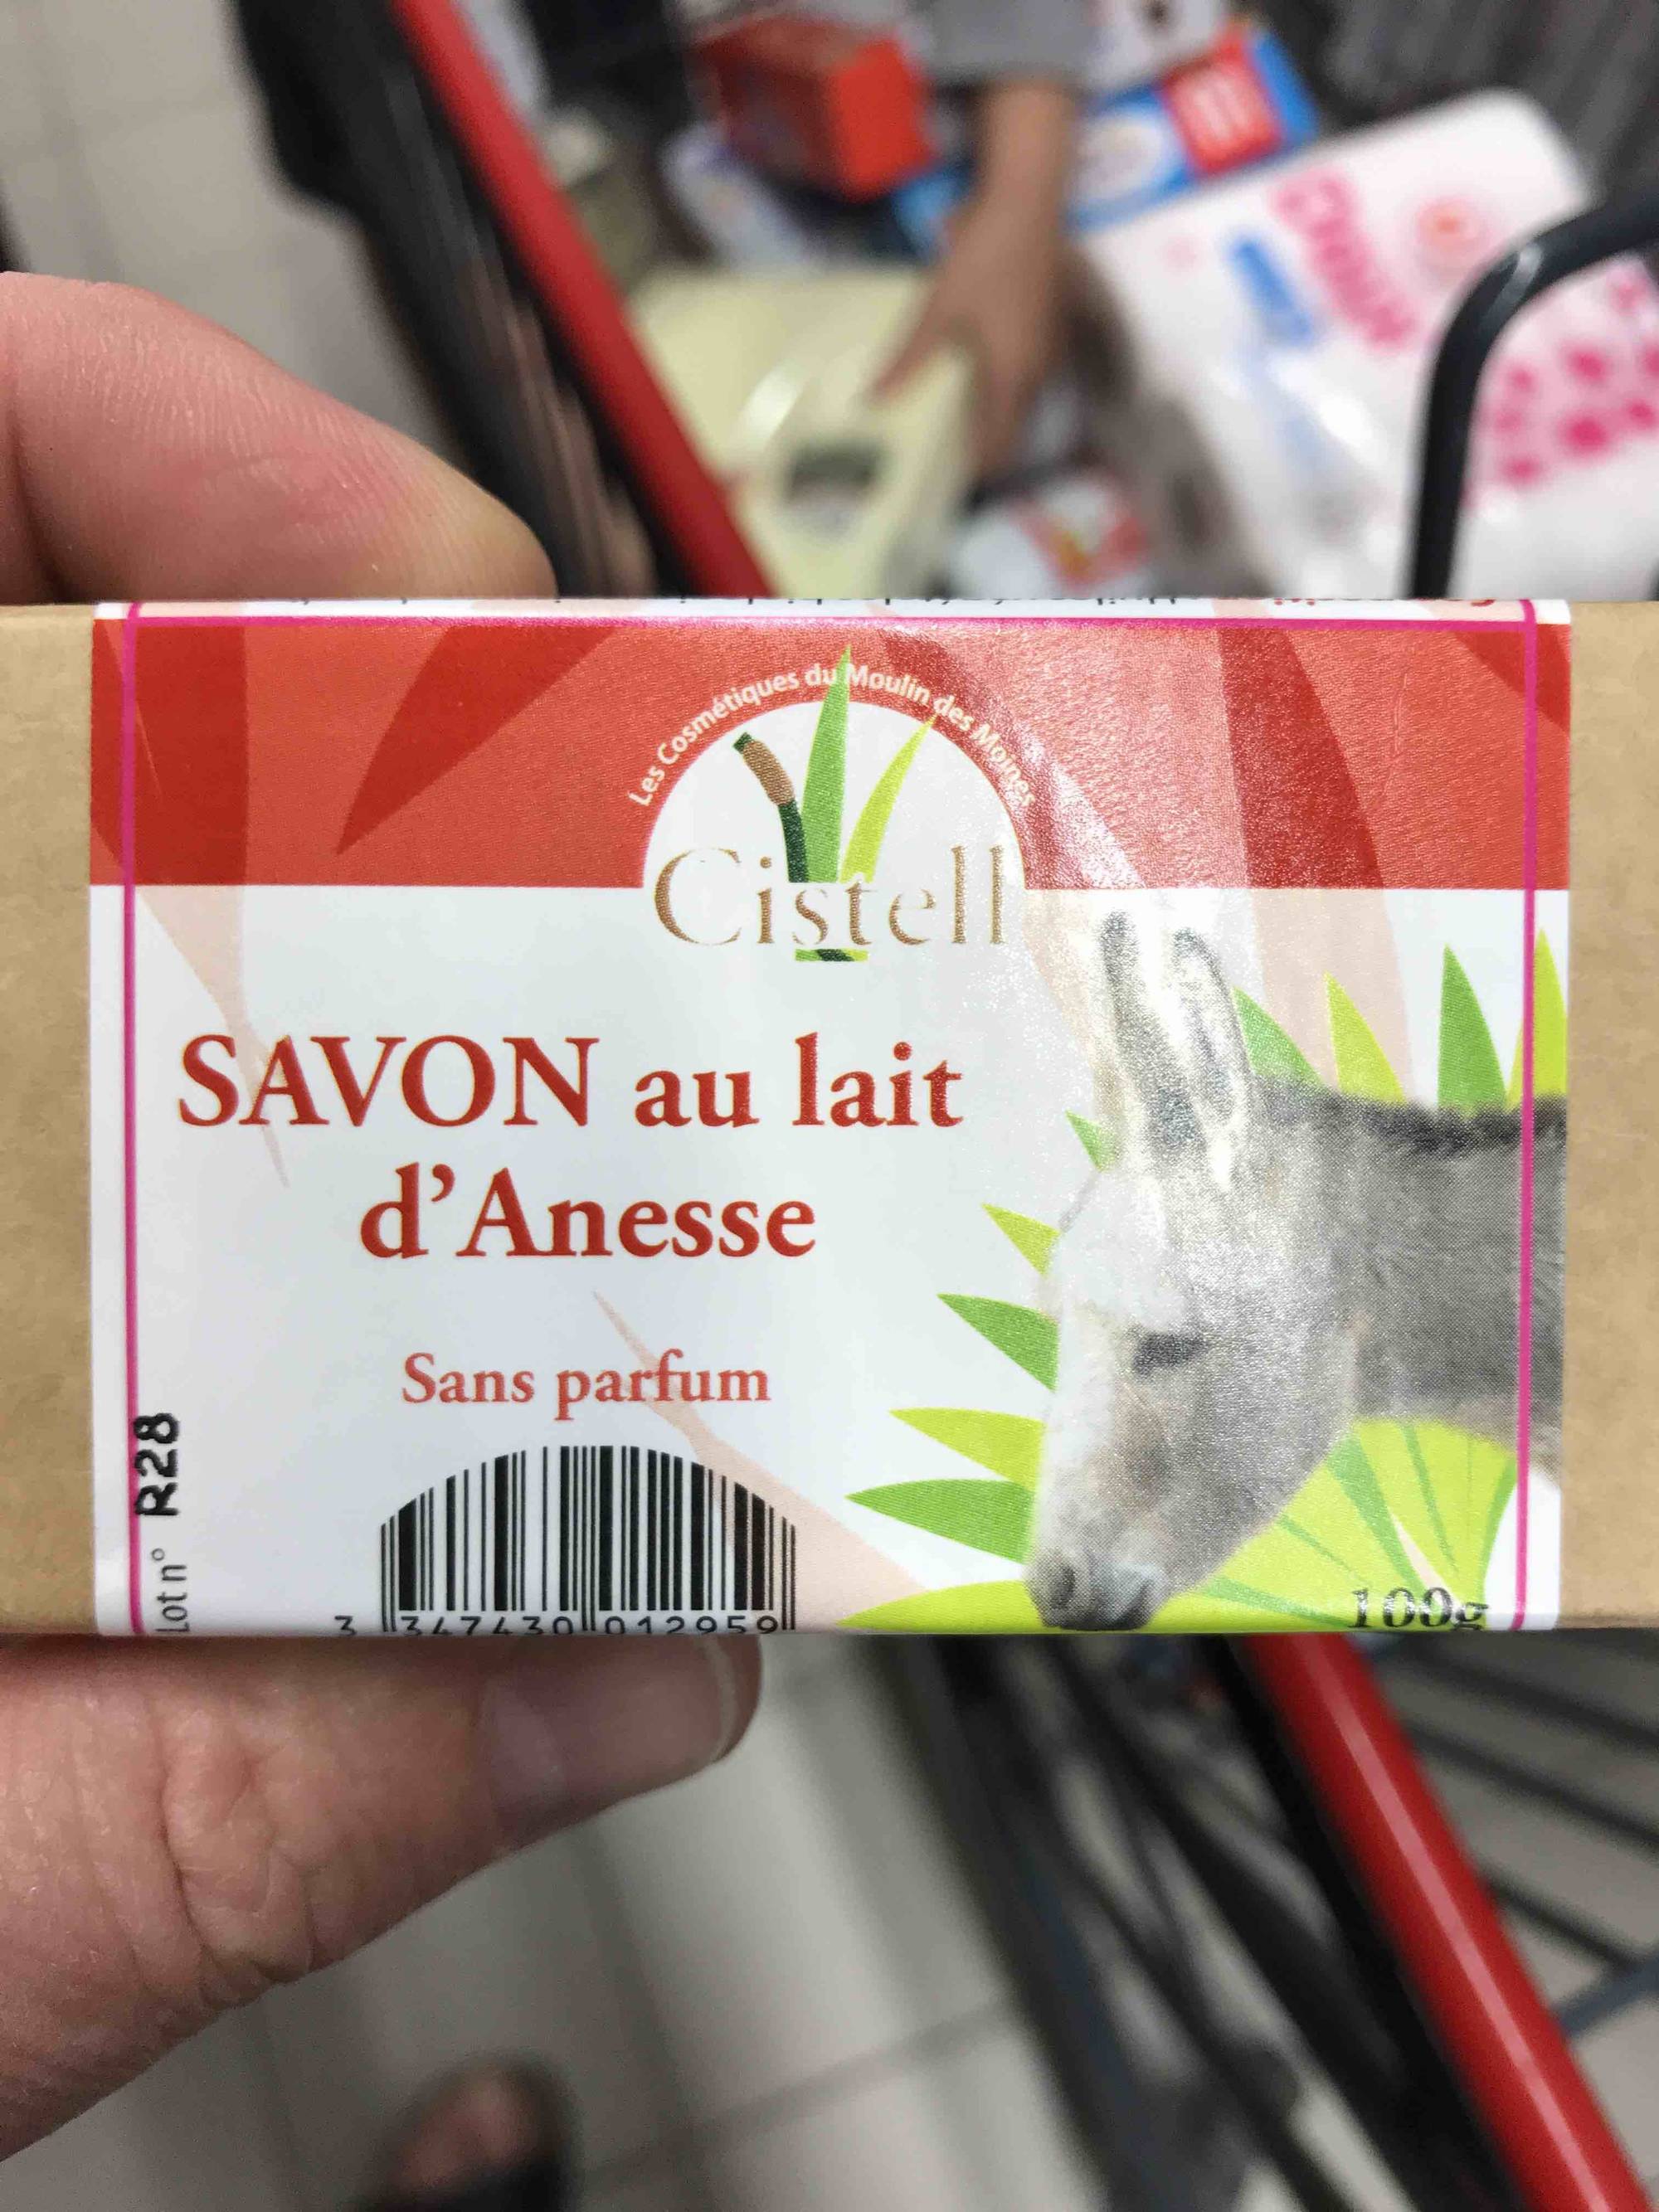 MOULIN DES MOINES - Cistell - Savon au lait d'ânesse sans parfum